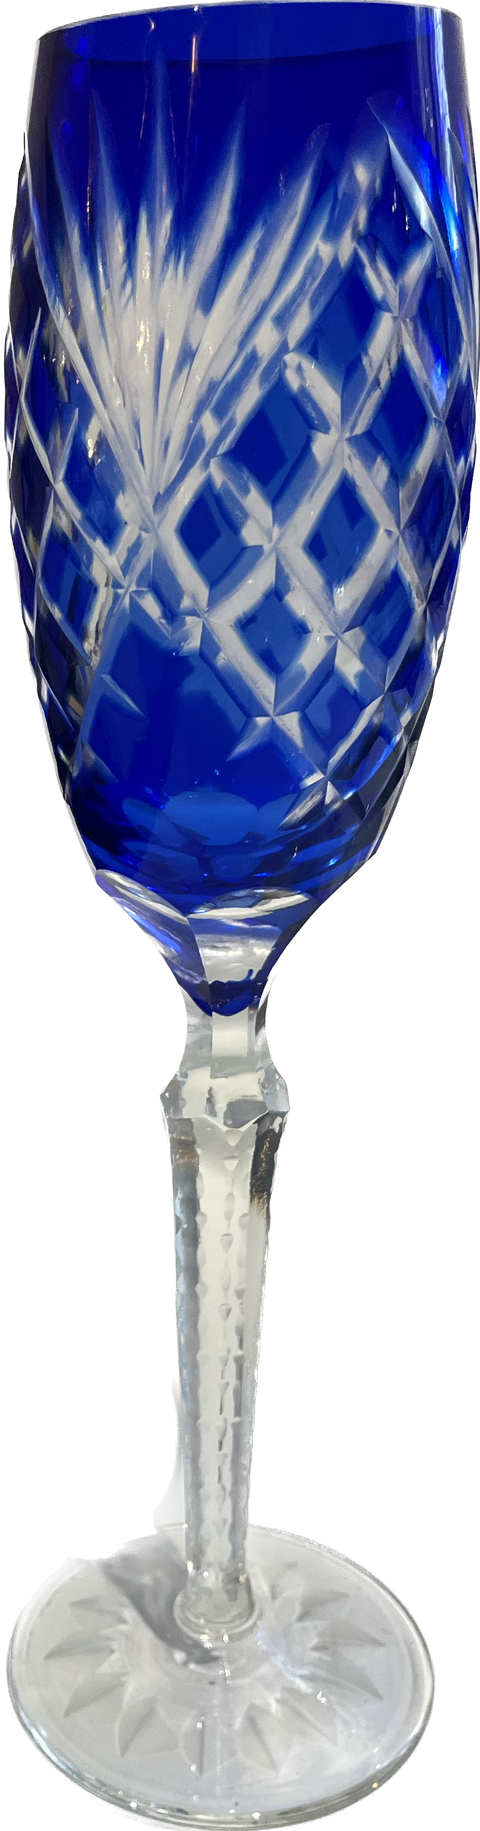 Crystal Cobalt Blue Champagne Flute 2.5" x 10.5"